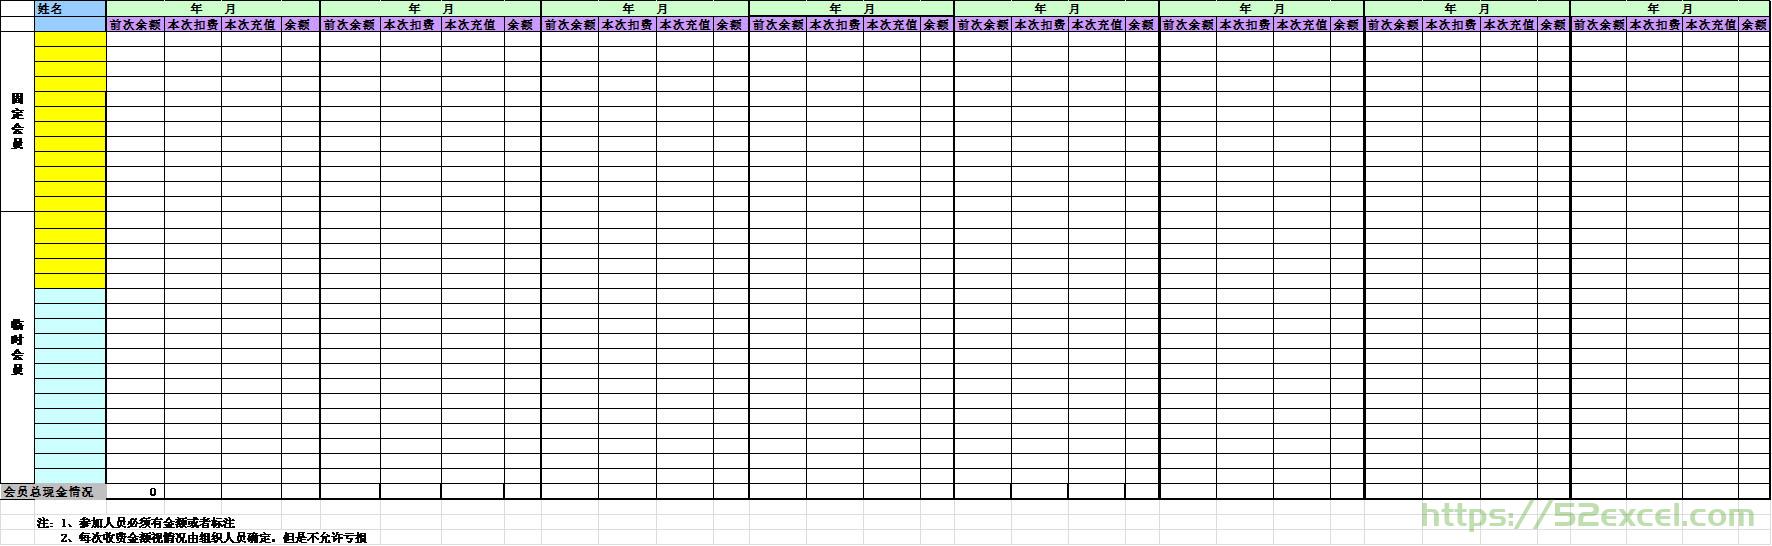 会员费用结算表Excel模板.jpg